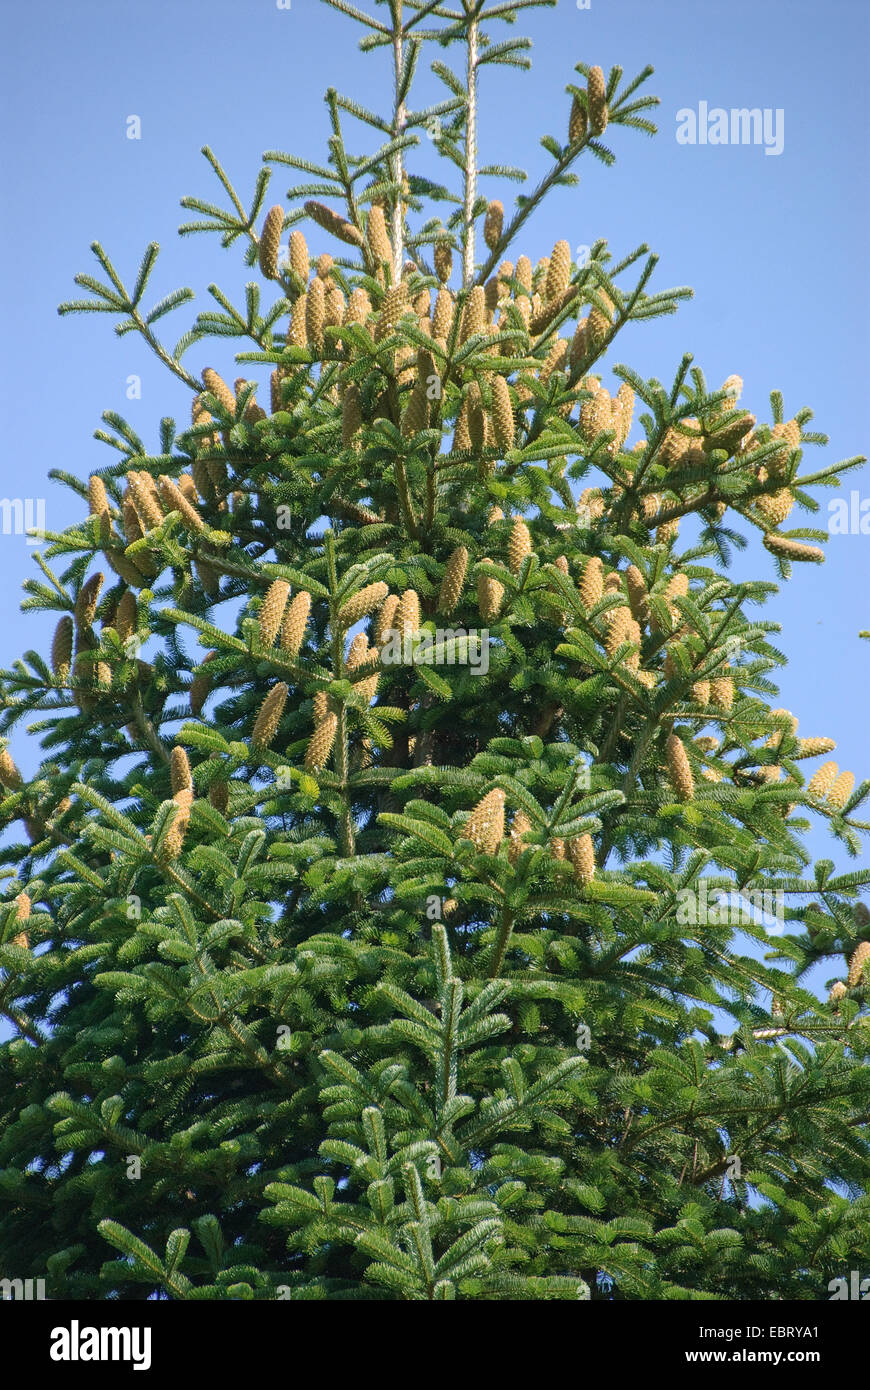 Trojan Fir, Kazdadi Fir, Turkish Fir (Abies equi-trojani, Abies nordmanniana ssp. equi-trojani), with cones Stock Photo